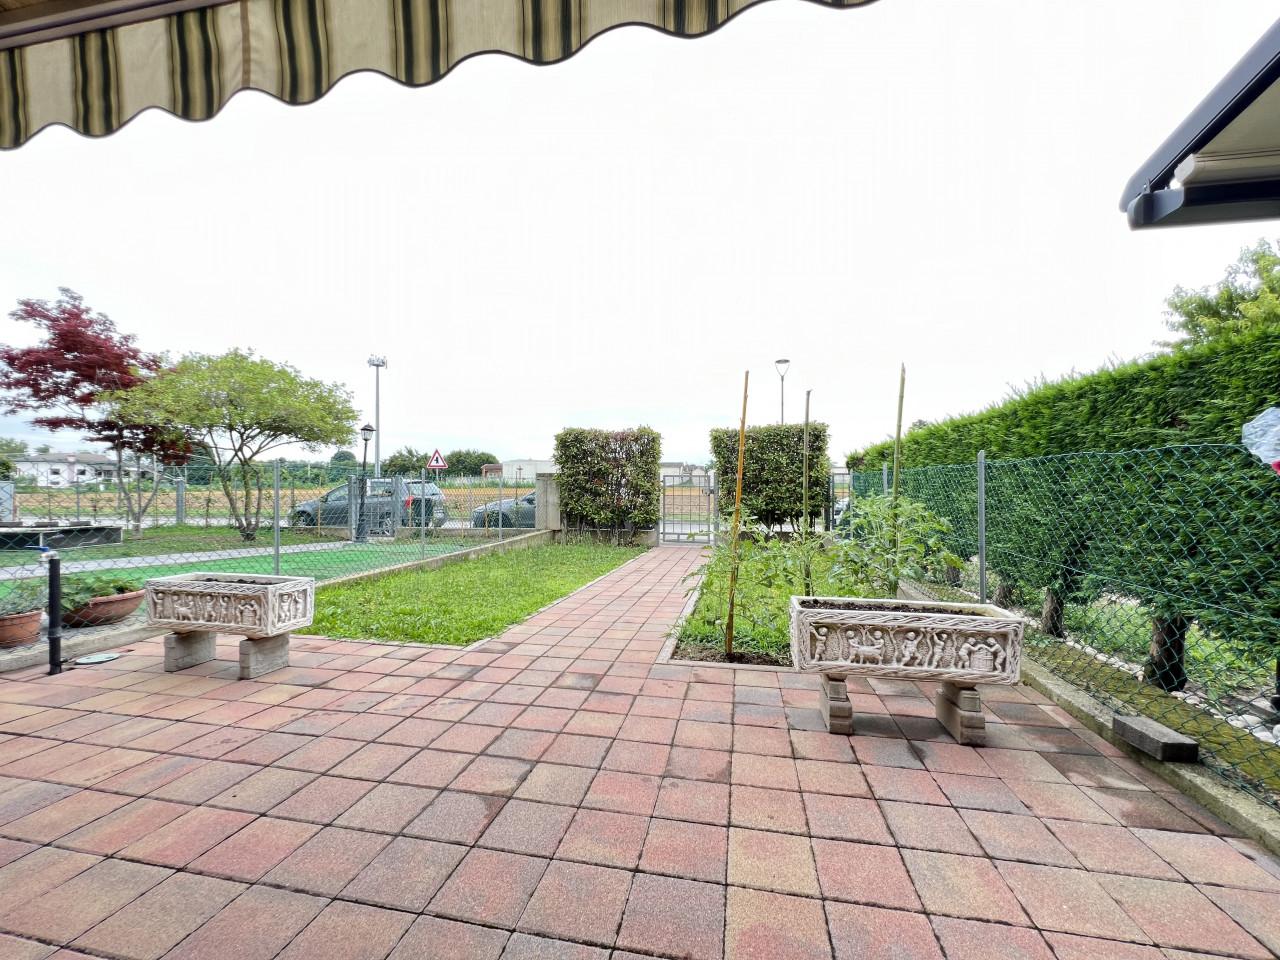 Villa in vendita a Campo San Martino